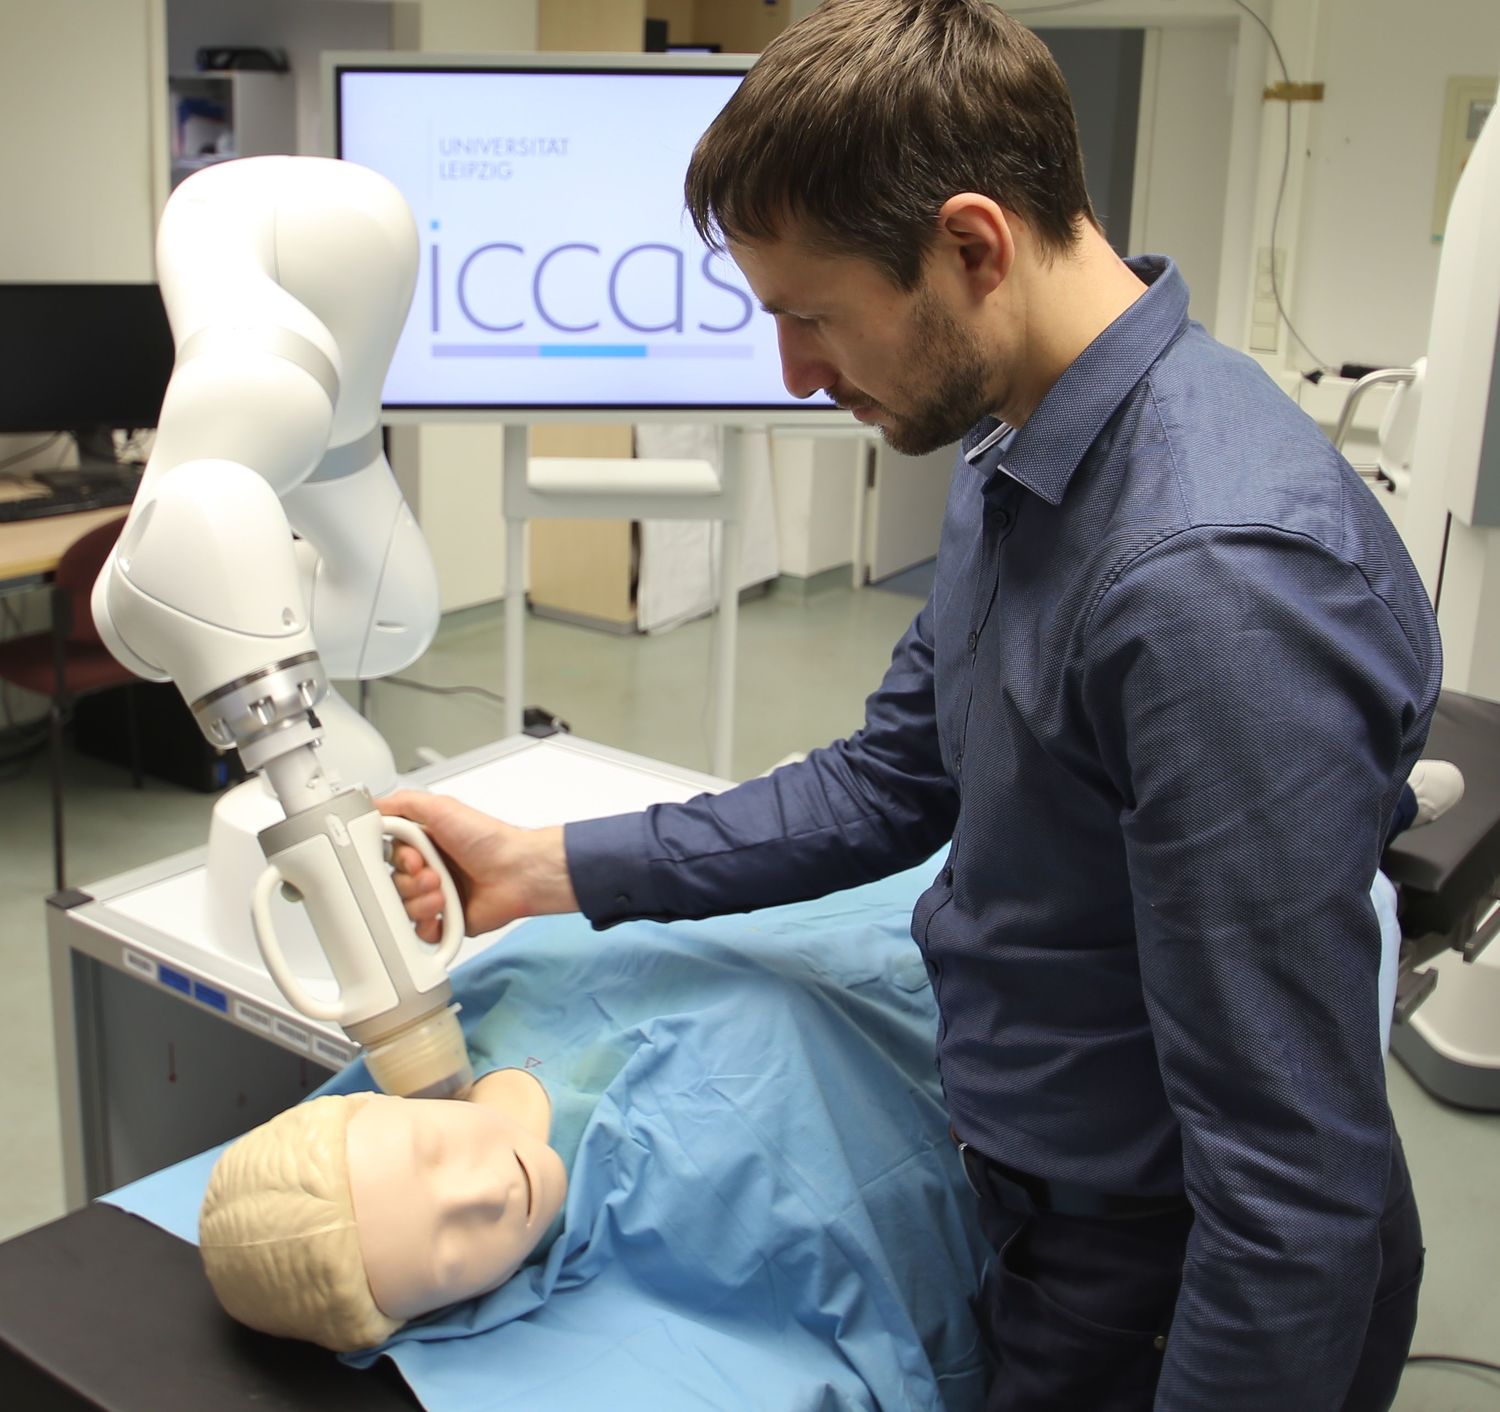 Am ICCAS entwickelter Demonstrator eines Robotersystems für die kombinierte Ultraschall-Radiotherapie, bestehend aus einem Kuka LBR Med-Roboterarm mit aufgesetztem Behandlungskopf.